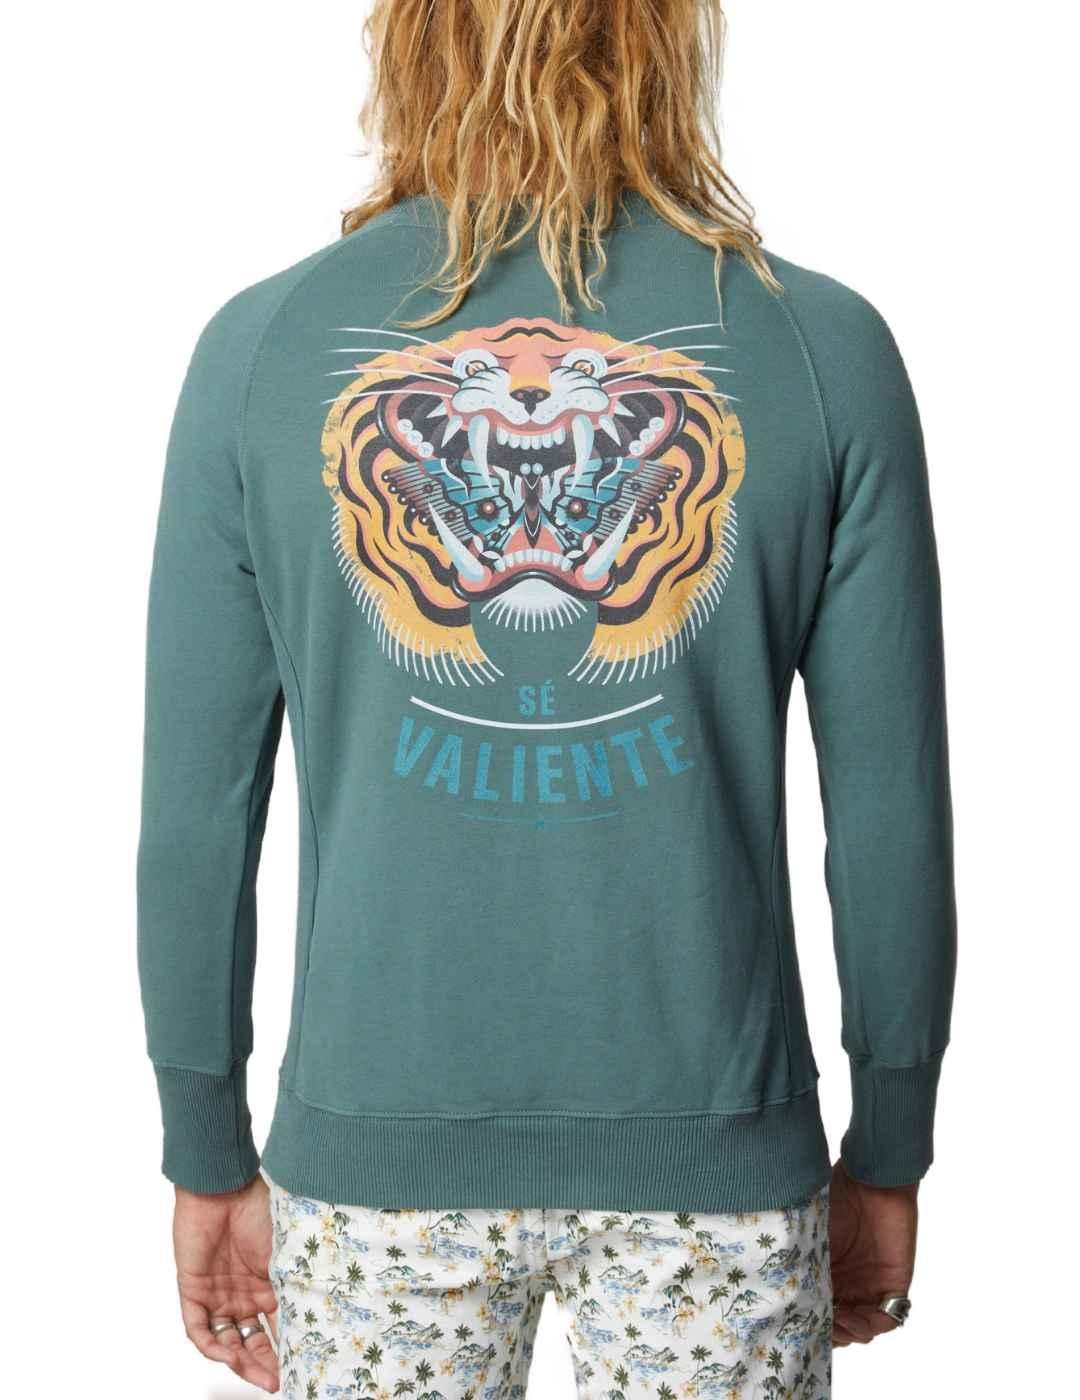 Sudadera Altonadock verde estampado tigre espalda de hombre